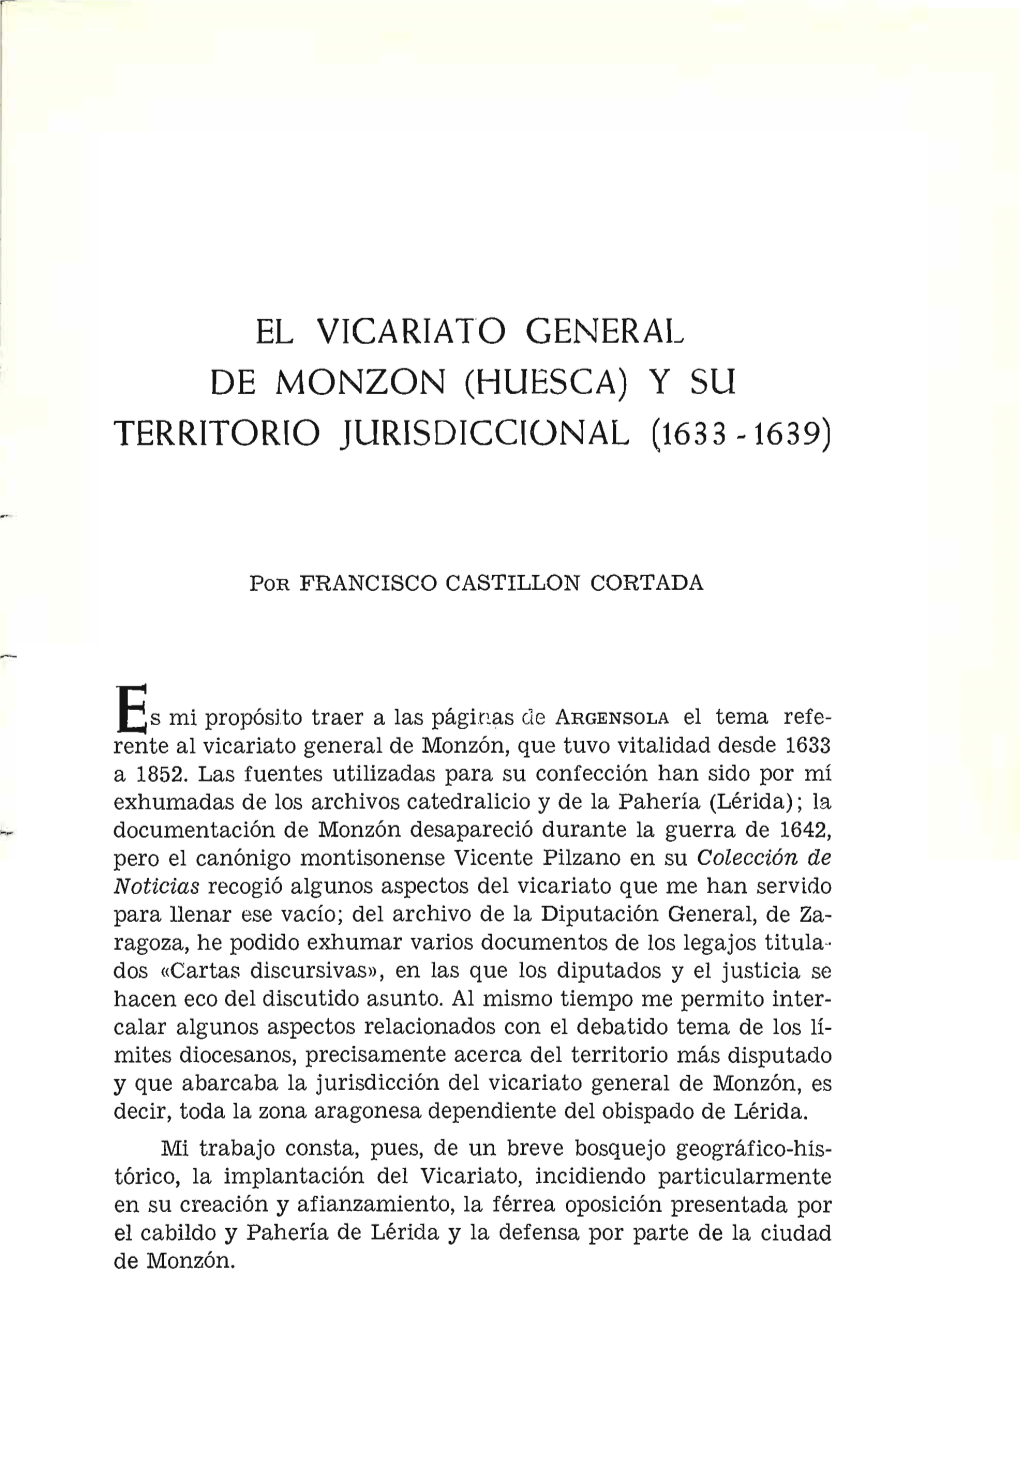 HUESCA) Y SU TERRITORIO JURISDICCIONAL (1633 -1639)